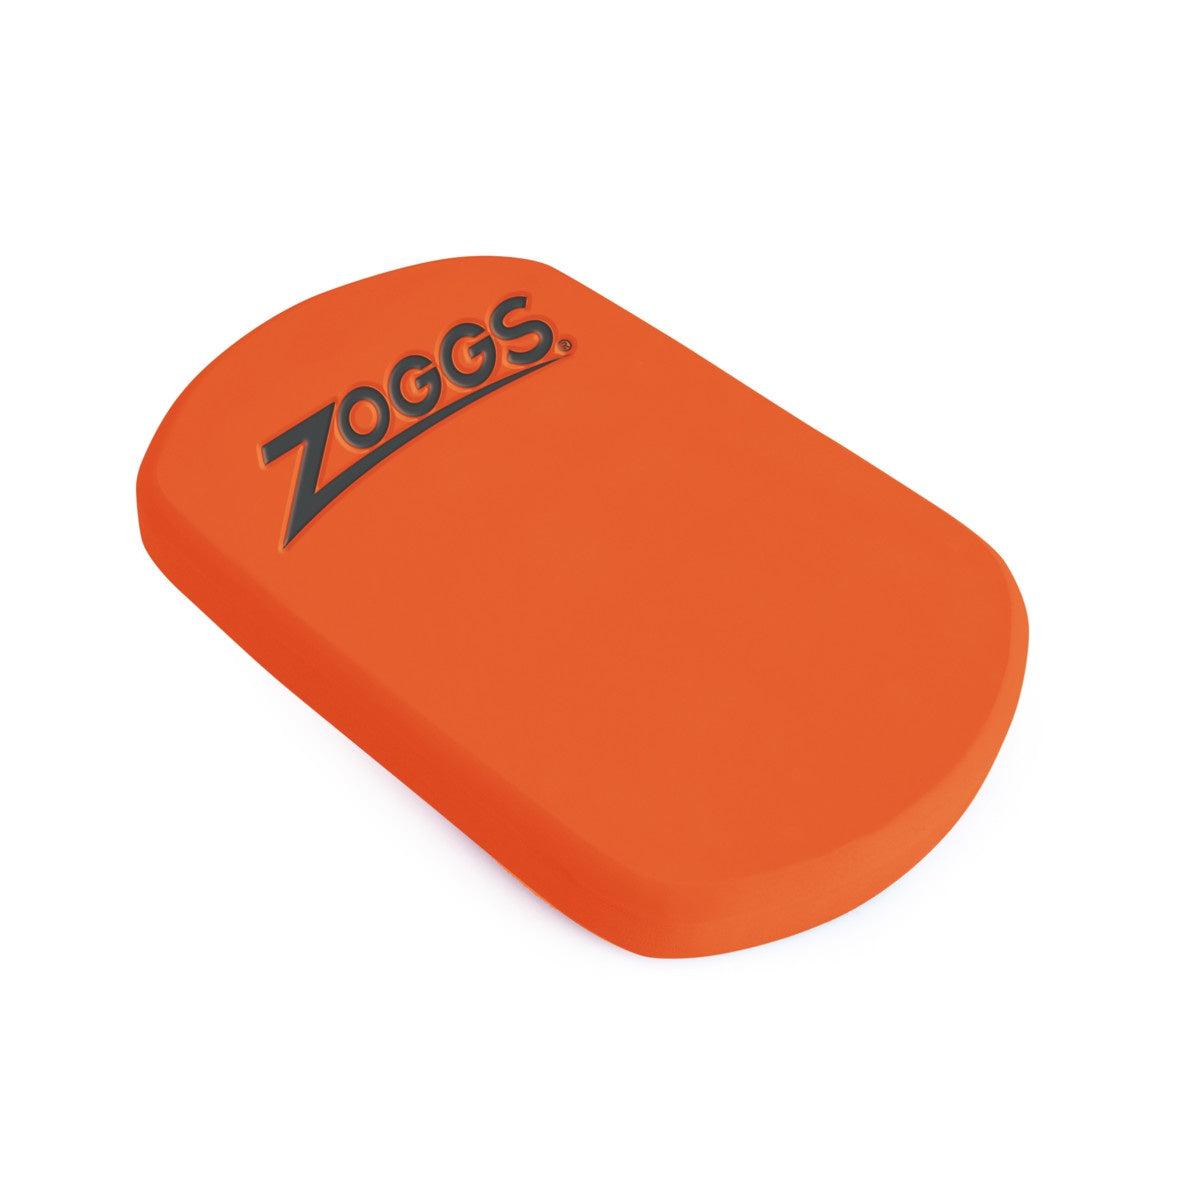 Zoggs Mini Kickboard-Bruntsfield Sports Online